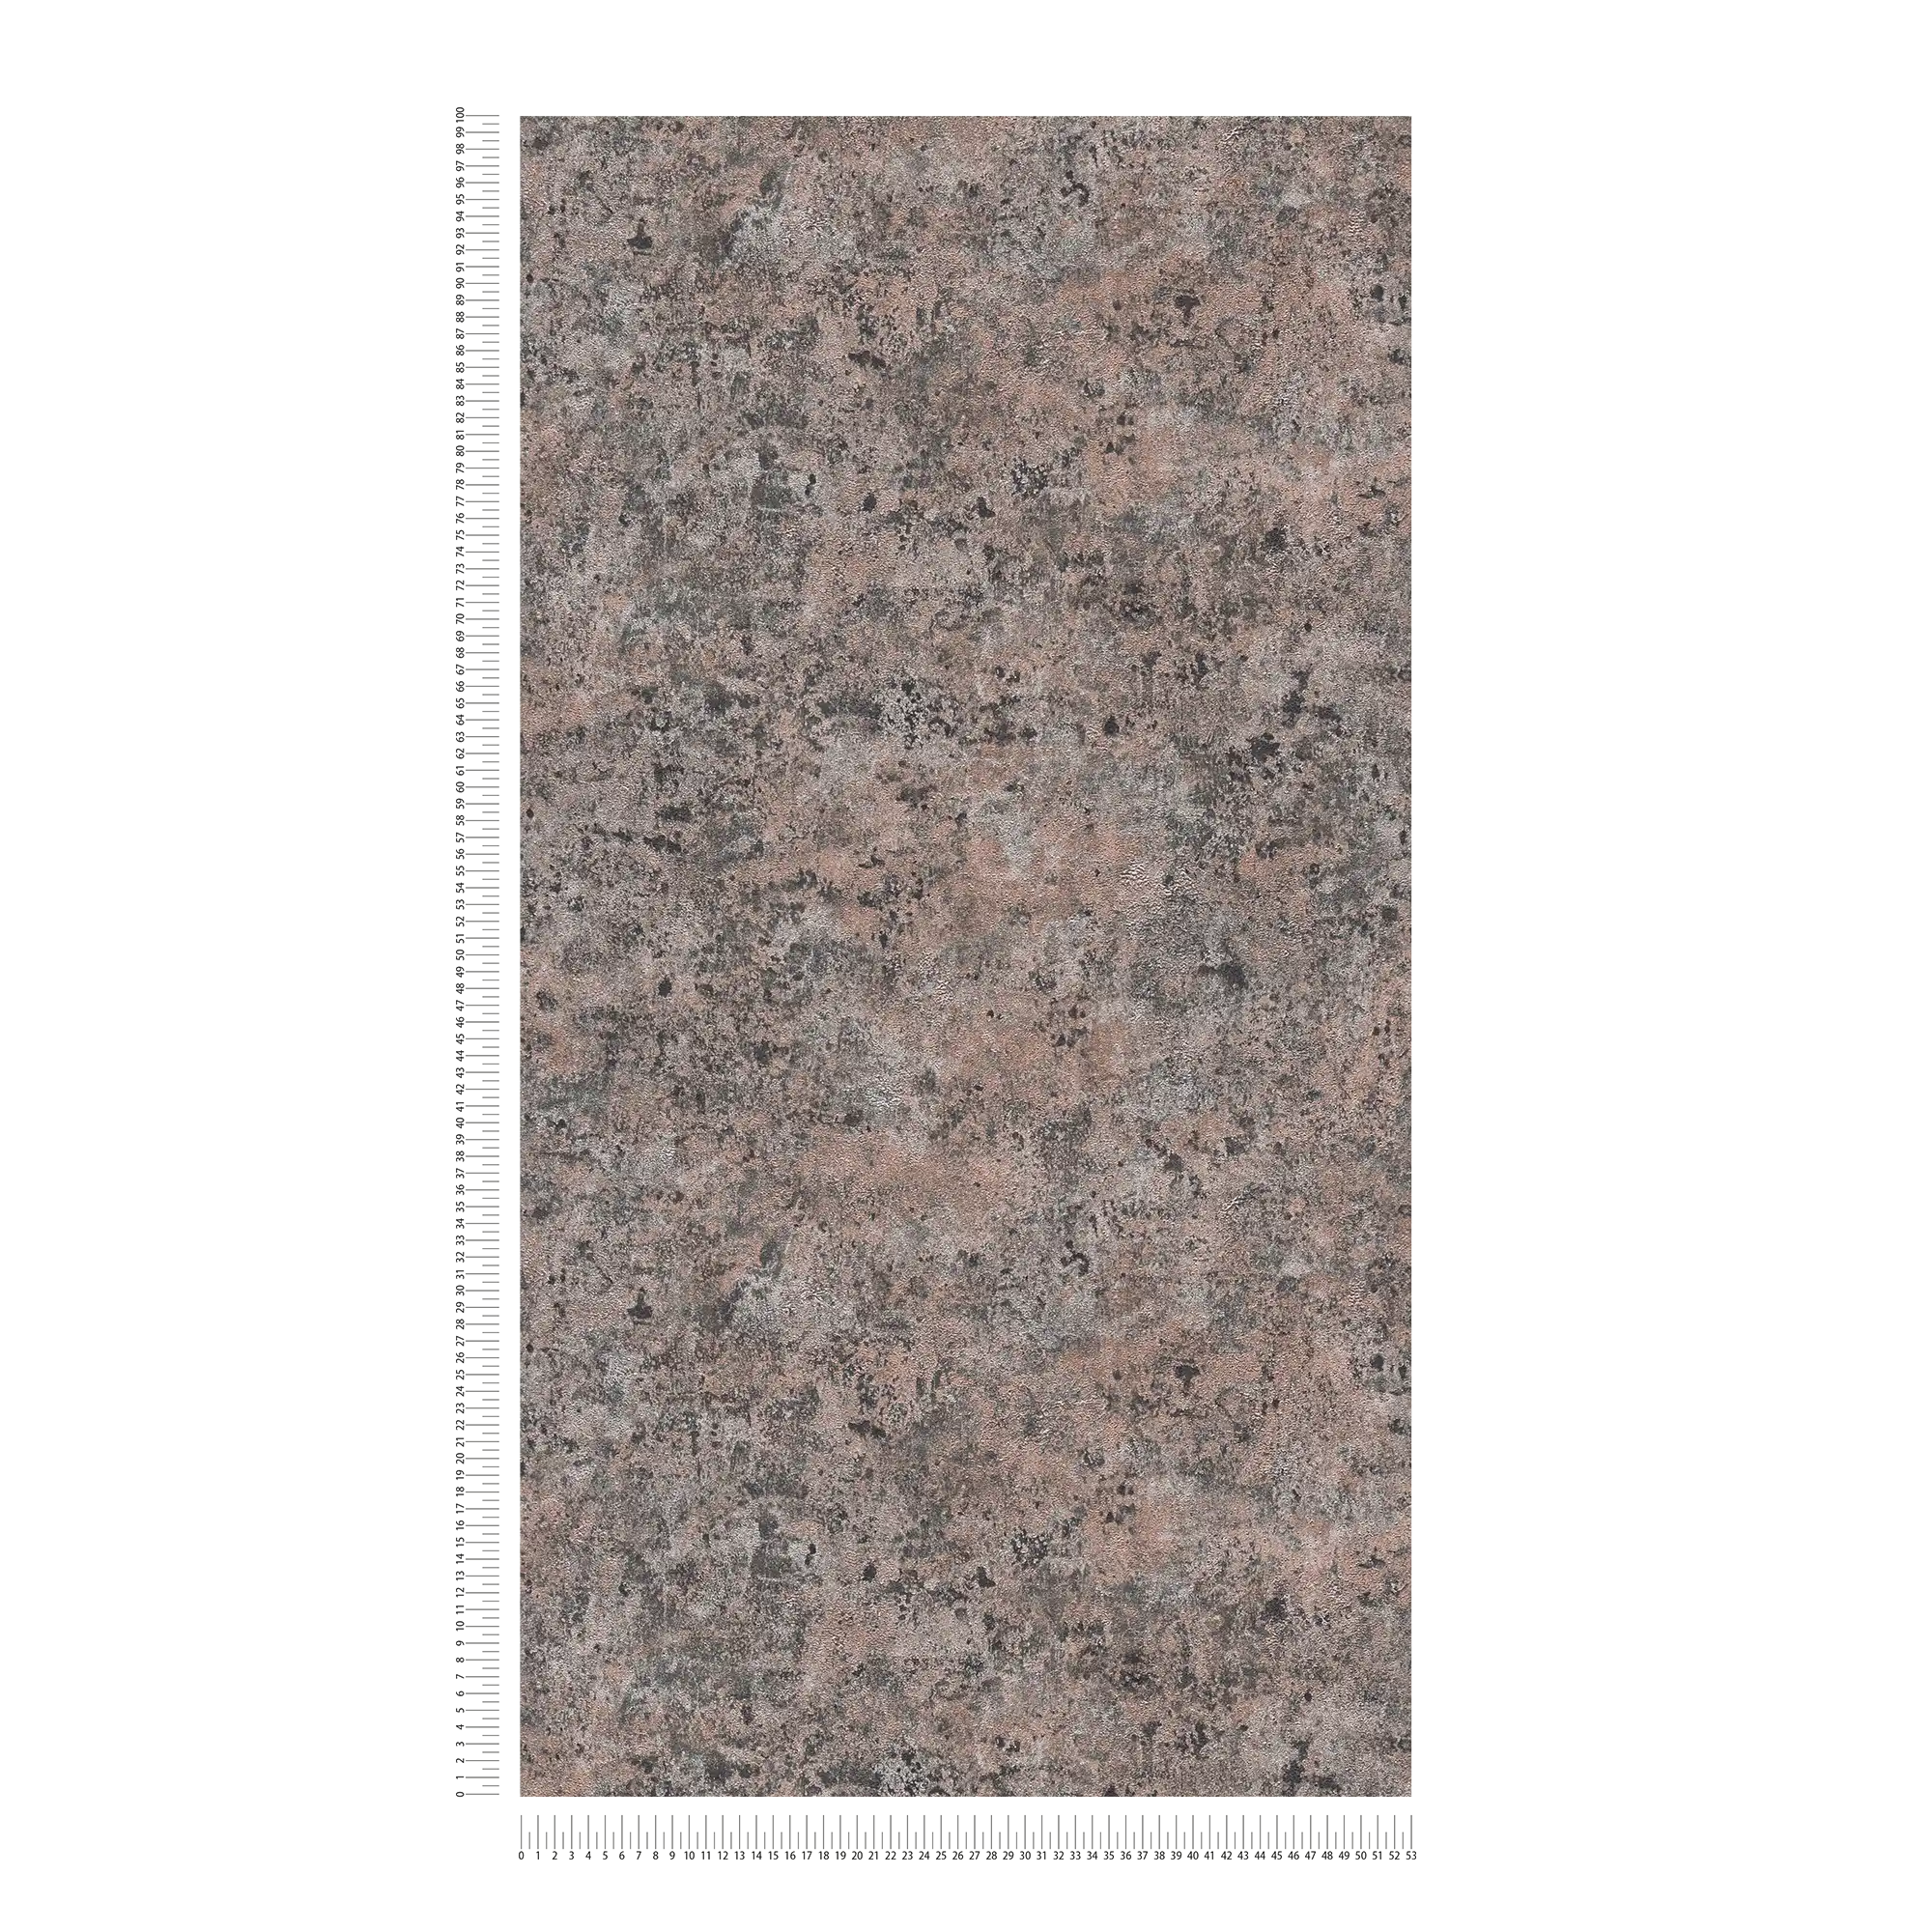             Carta da parati in tessuto non tessuto metallizzato in look lucido usato - bronzo, nero, argento
        